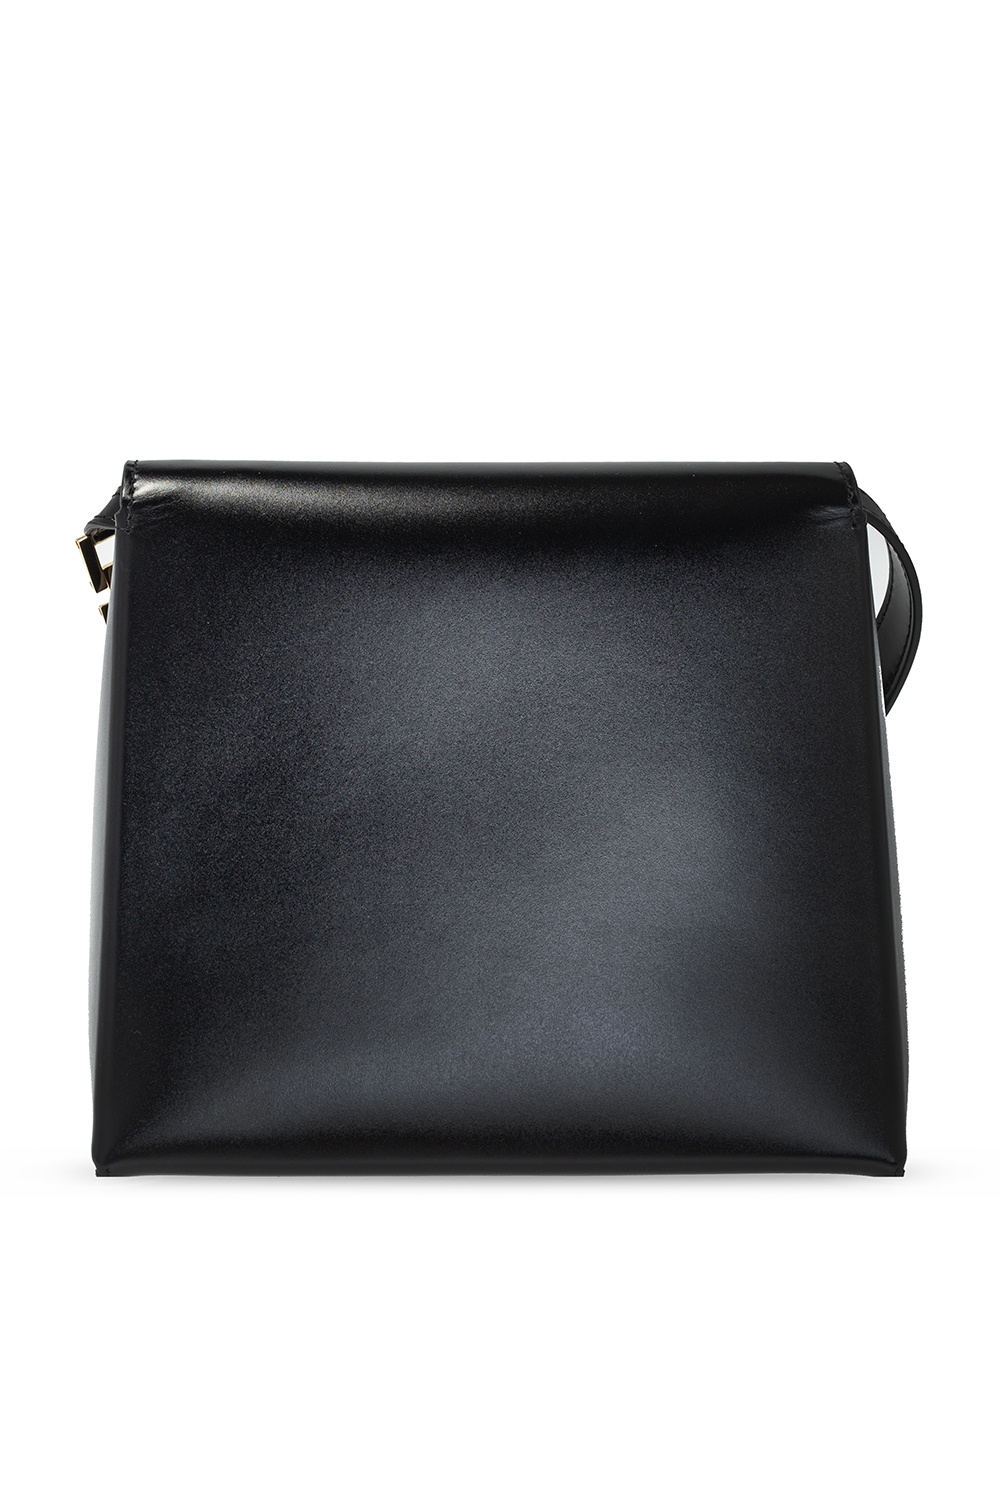 JIL SANDER Branded handbag